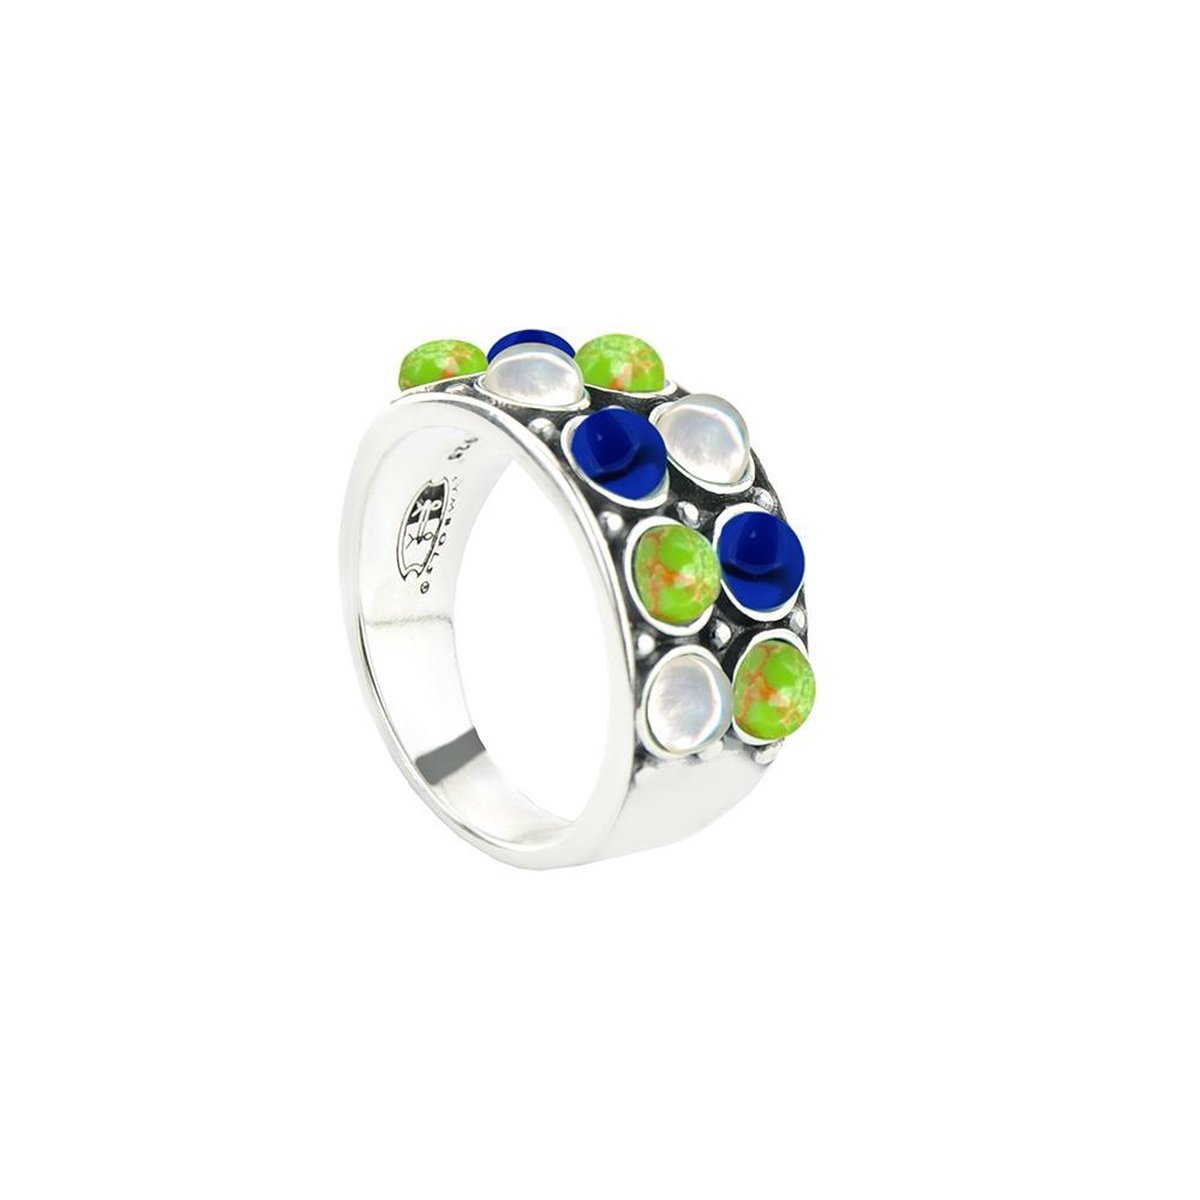 Symbols 9SY 0065 60 Zilveren Ring - Maat 60 - Turkoois - Lapis Lazuli - Parel - Blauw - Groen - Wit - Geoxideerd